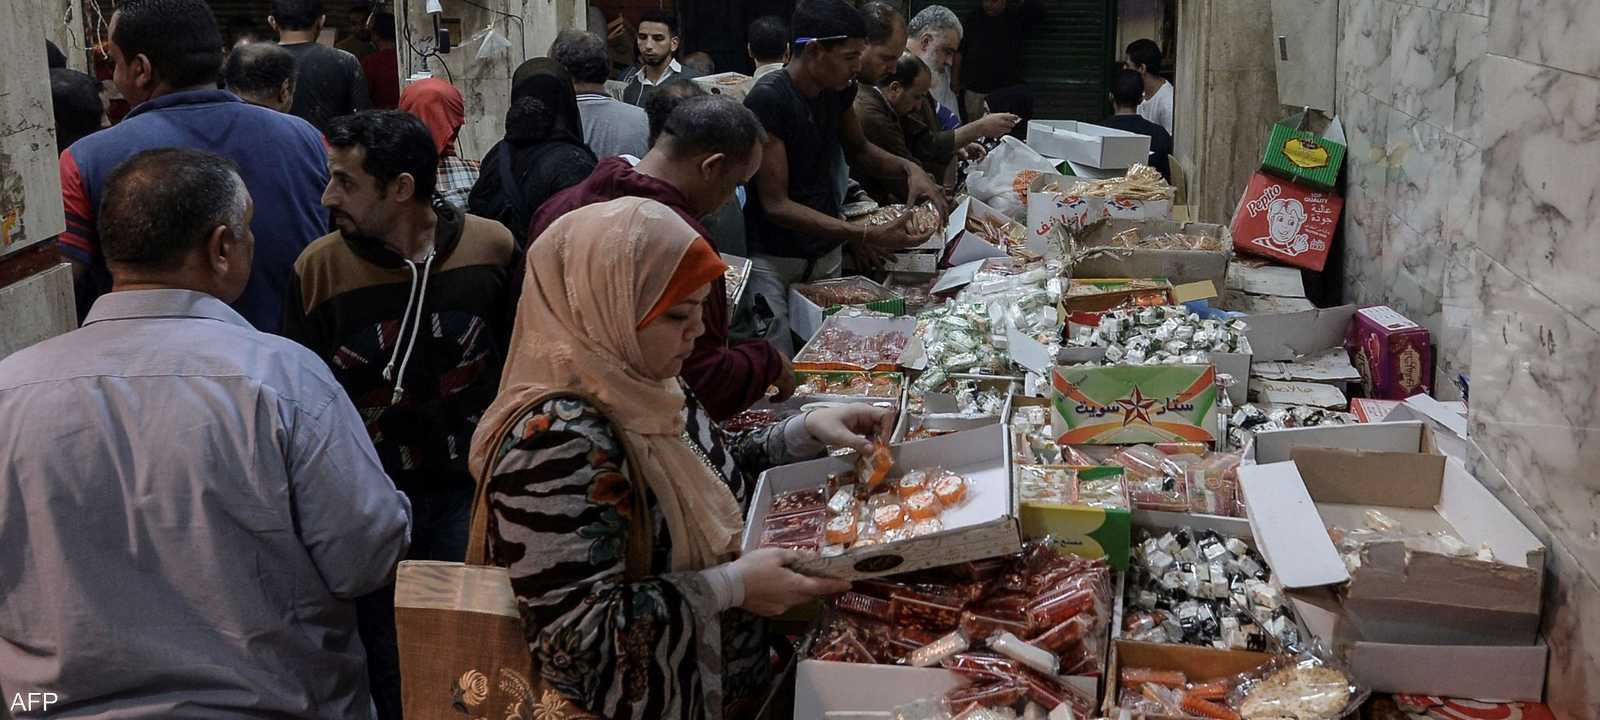 أسعار الحلويات ارتفعت خلال الموسم الرمضاني في مصر. (أرشيف)